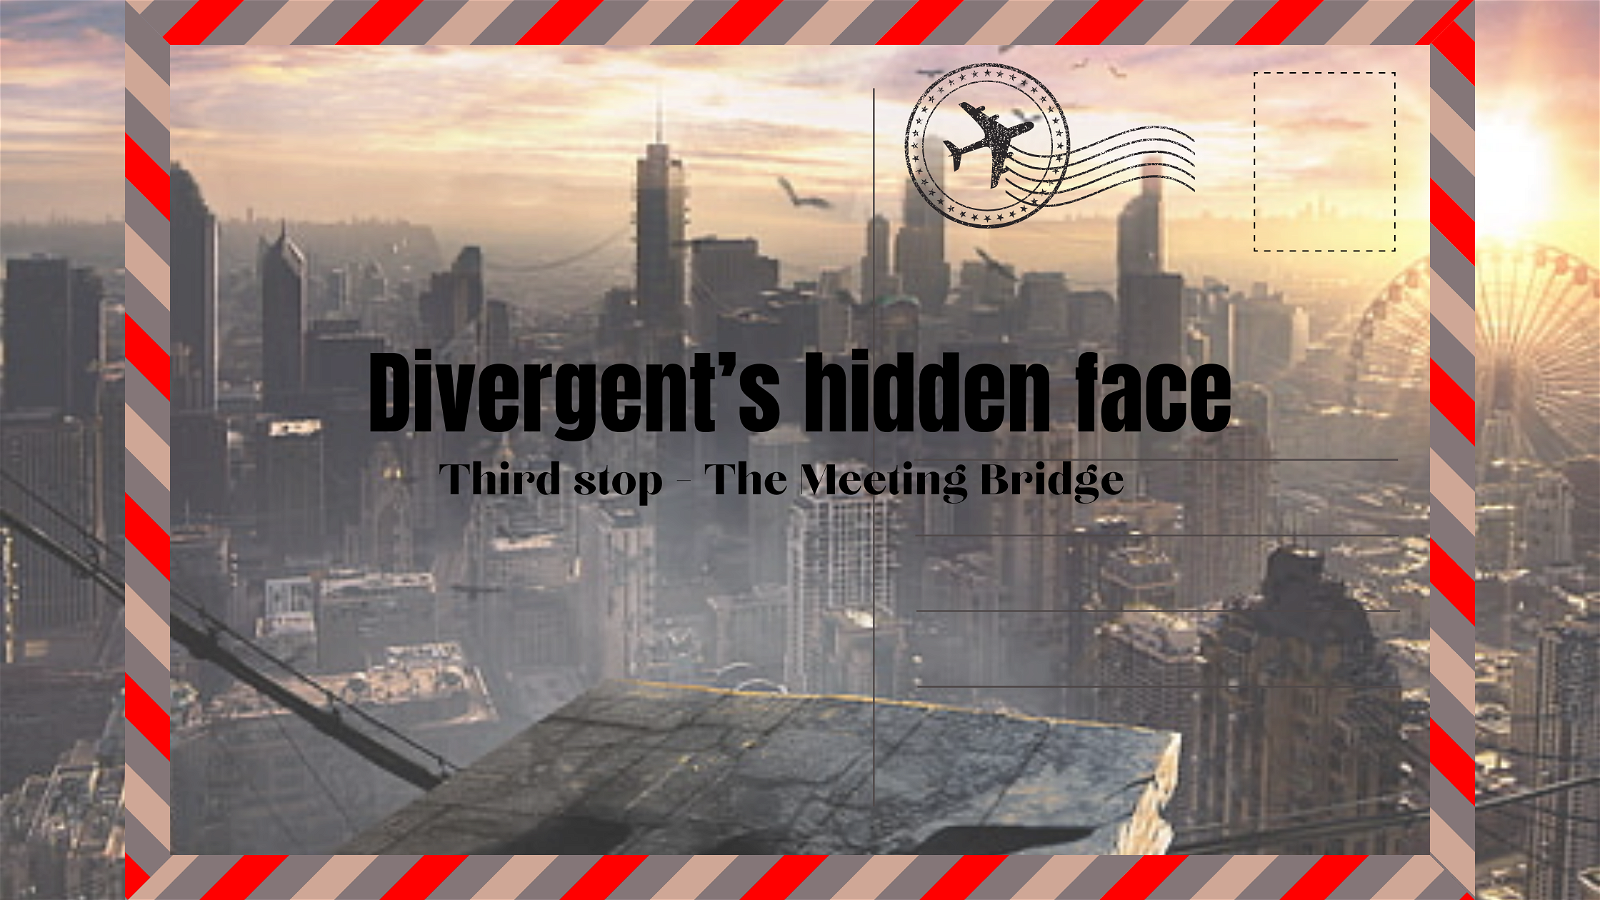 Divergent's hidden face - third stop